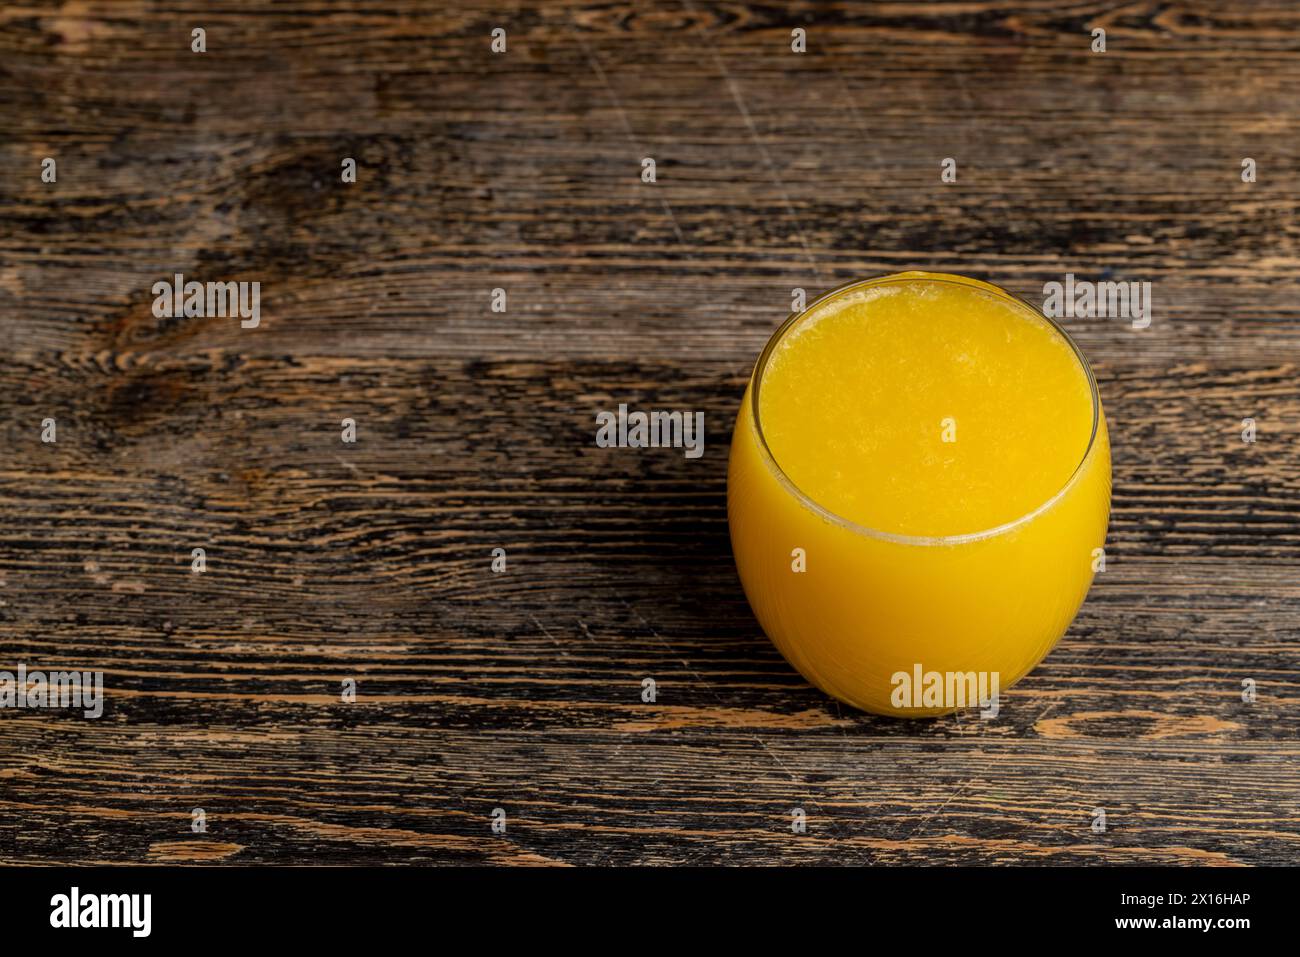 tranches d'orange pelées et jus d'orange sur la table, jus d'orange dans une tasse en verre gros plan Banque D'Images